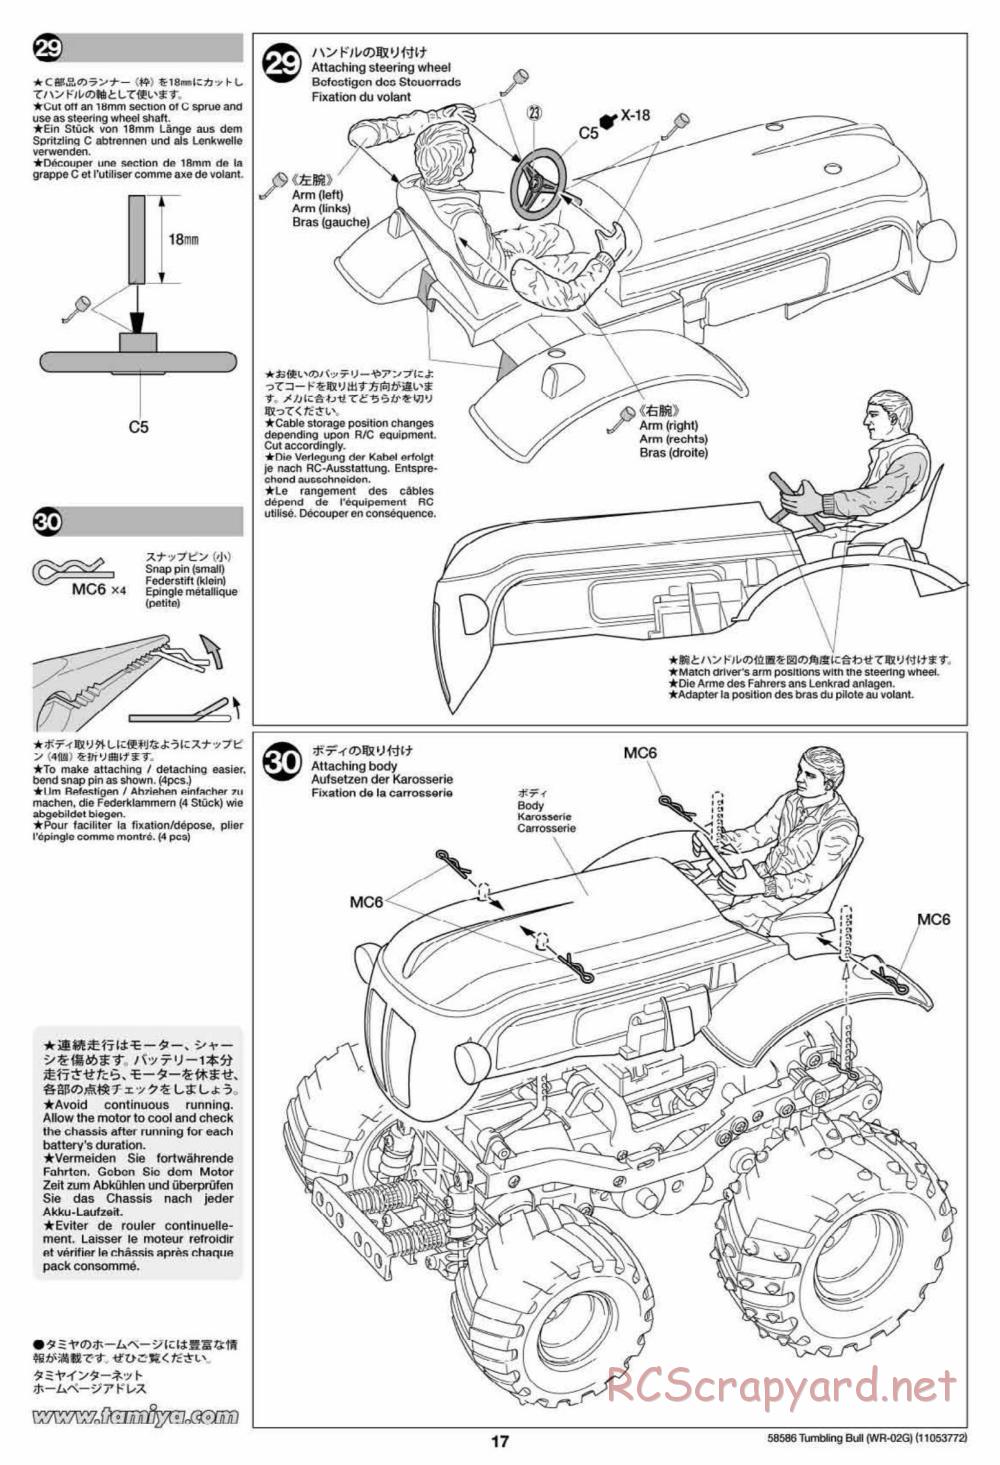 Tamiya - Tumbling Bull Chassis - Manual - Page 17